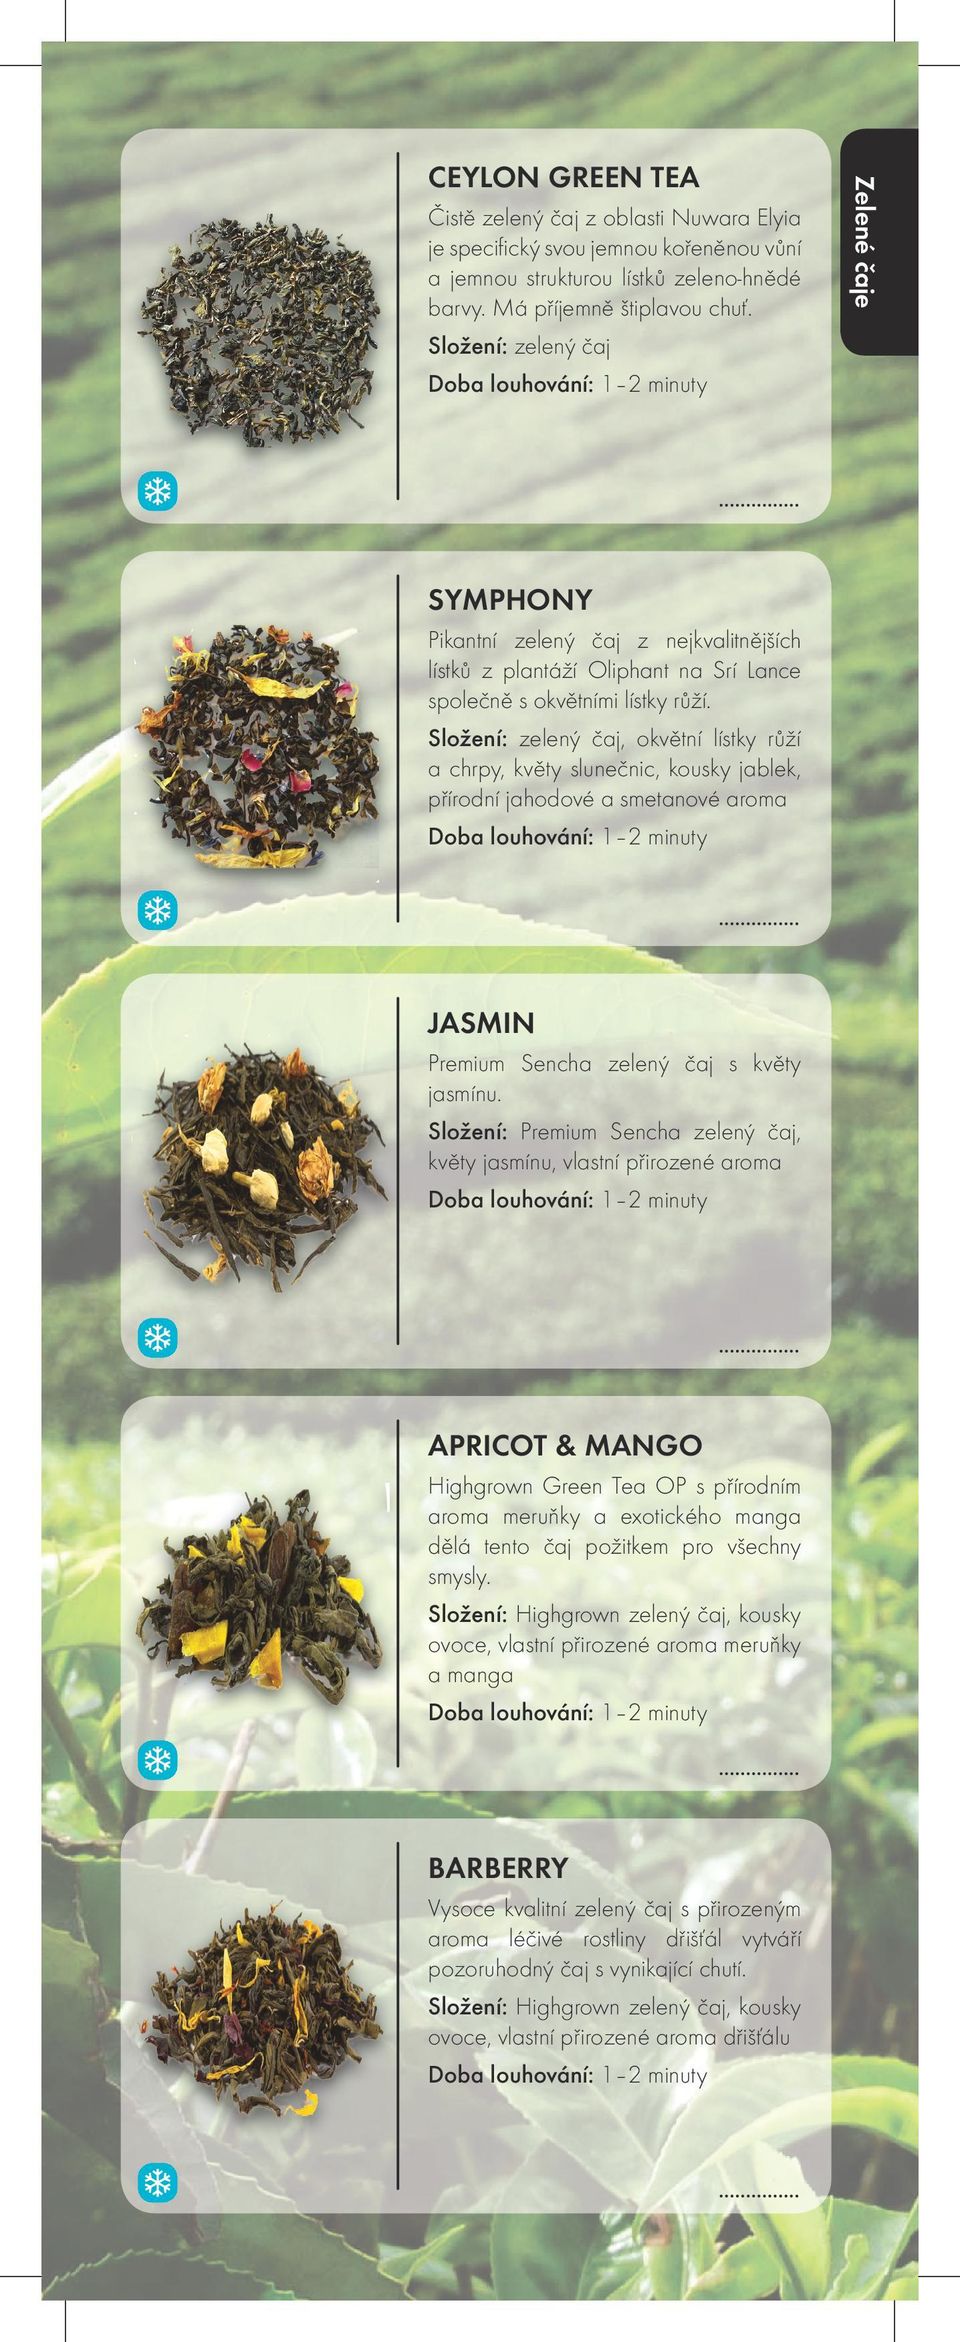 Složení: zelený čaj, okvětní lístky růží a chrpy, květy slunečnic, kousky jablek, přírodní jahodové a smetanové aroma JASMIN Premium Sencha zelený čaj s květy jasmínu.